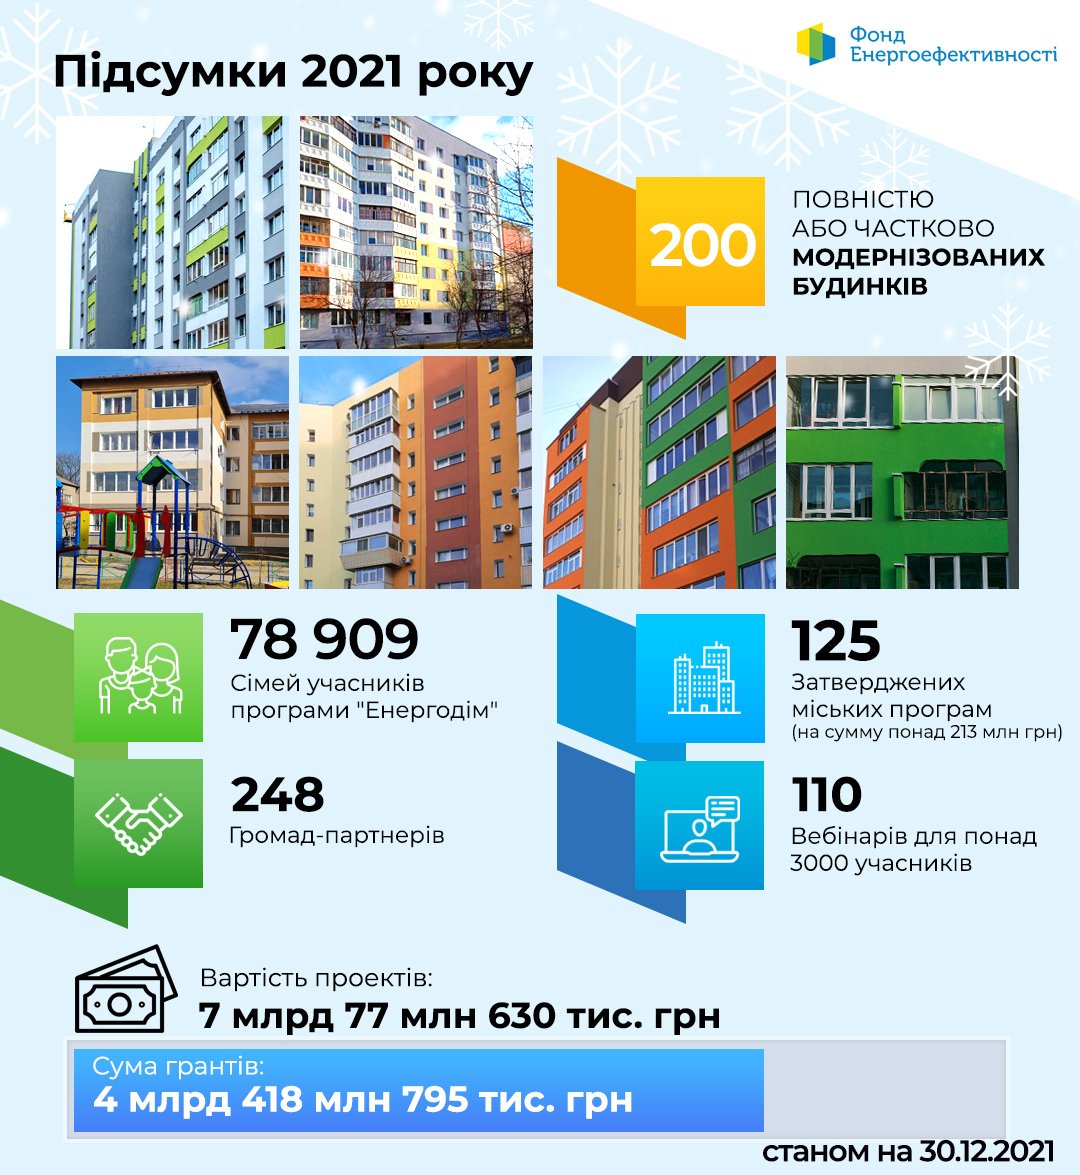 Понад 200 енергомодернізованих будинків та онлайн-заявки - ключові досягнення Фонду енергоефективності у 2021 році